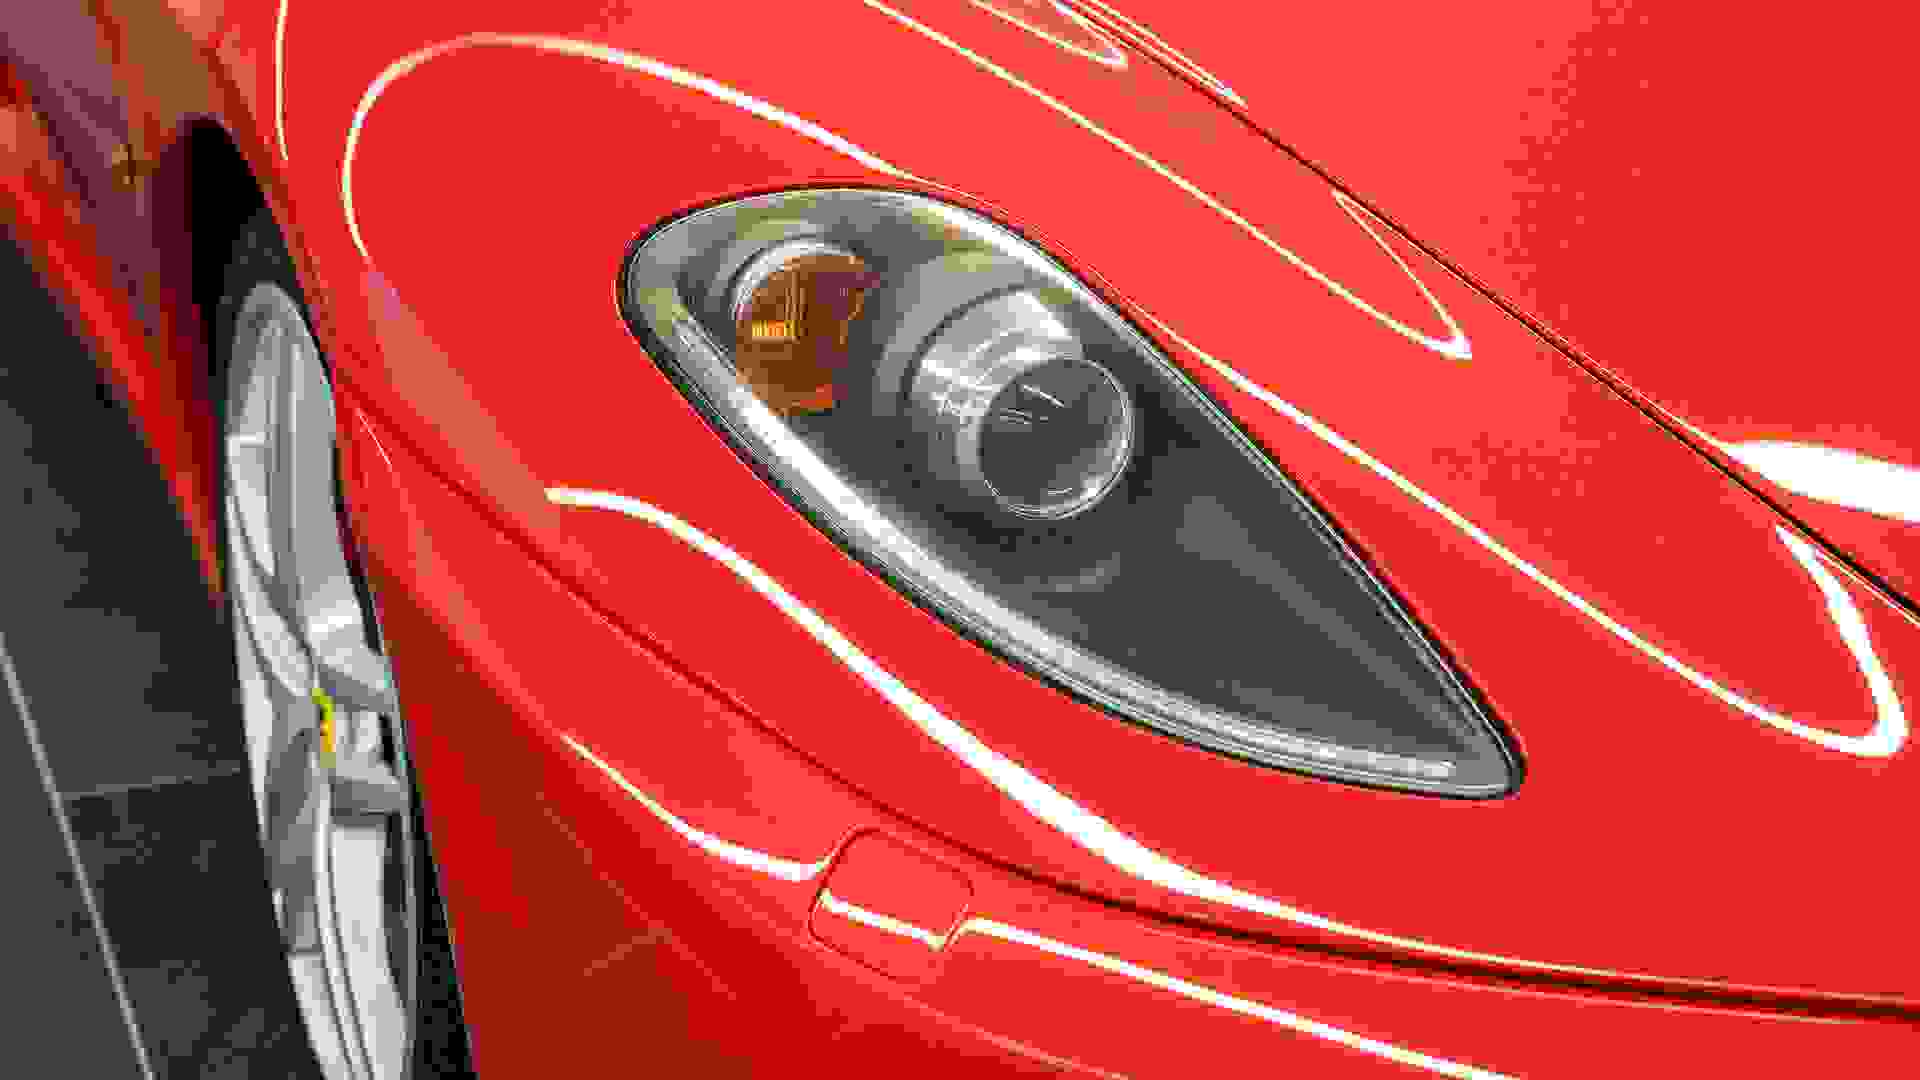 Ferrari F430 Photo 2ecc897f-f450-46db-94df-842cfe0ed875.jpg